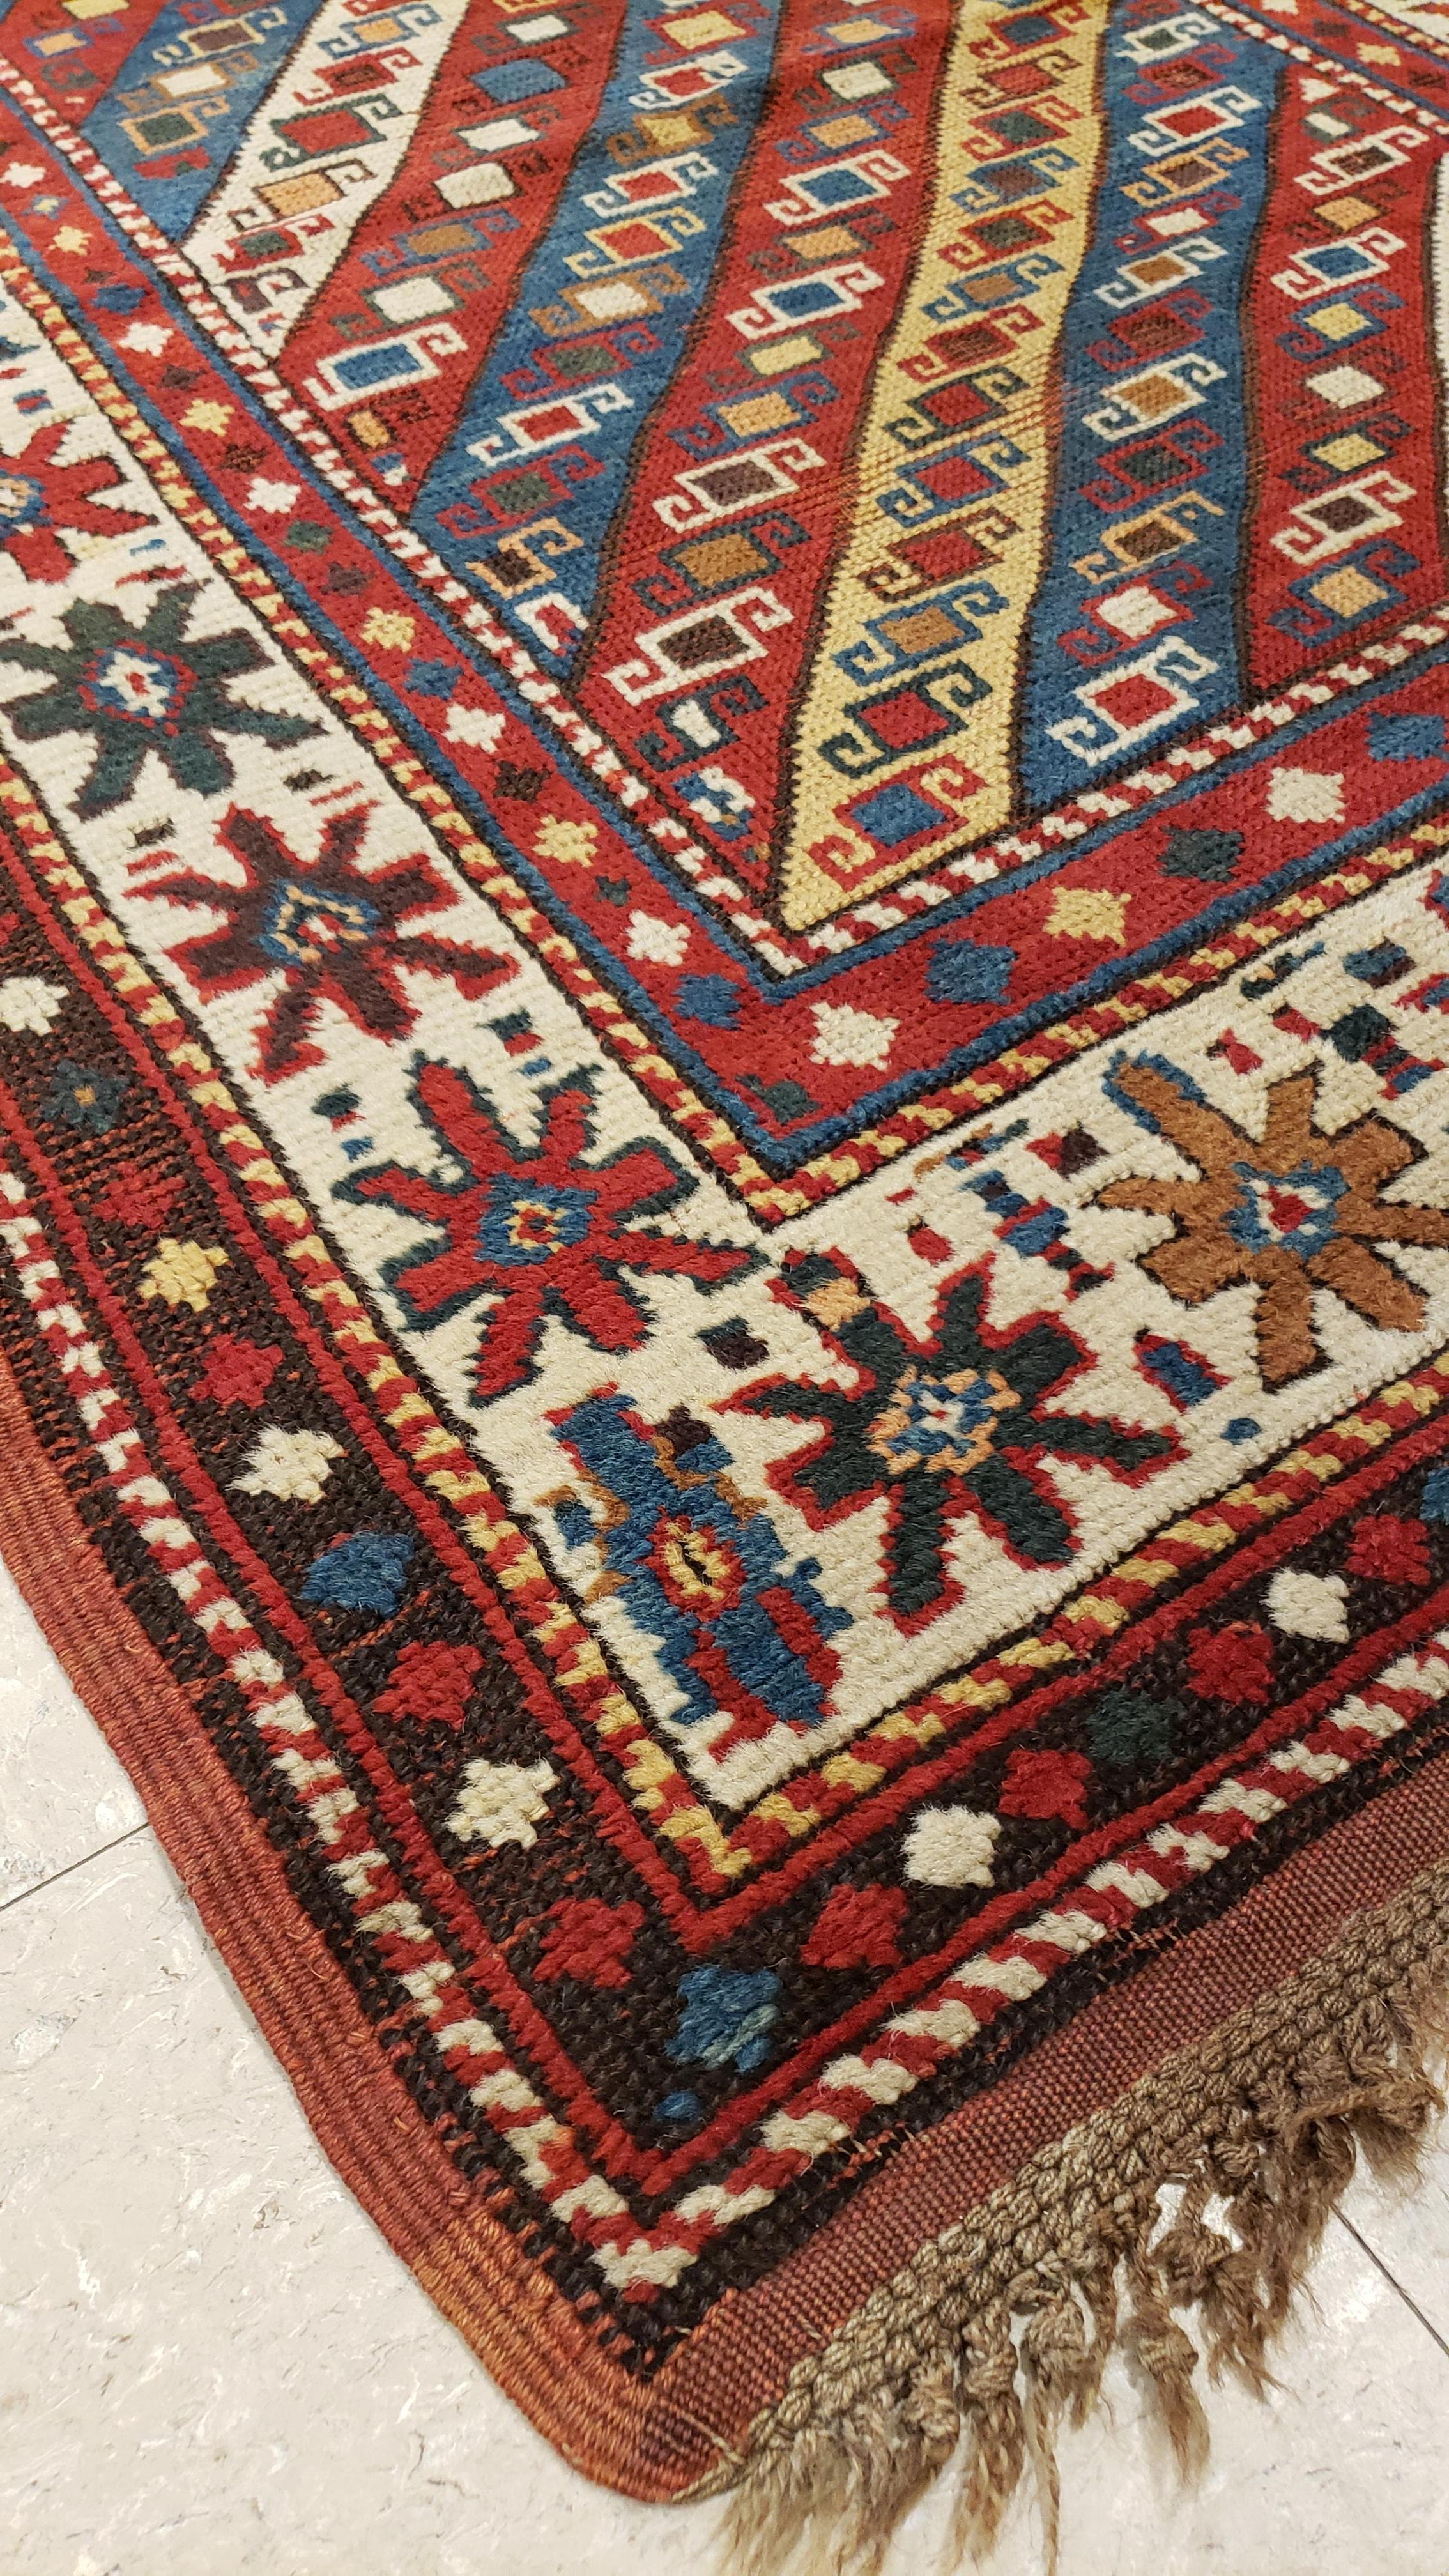 Die Kazak-Teppiche haben ein sehr ungewöhnliches Design und gehören zu den begehrtesten kaukasischen Teppichen. Dieser Kazak ist ein großartiges Beispiel für ein Sammlerstück des 19. Jahrhunderts. Maße: 3'3